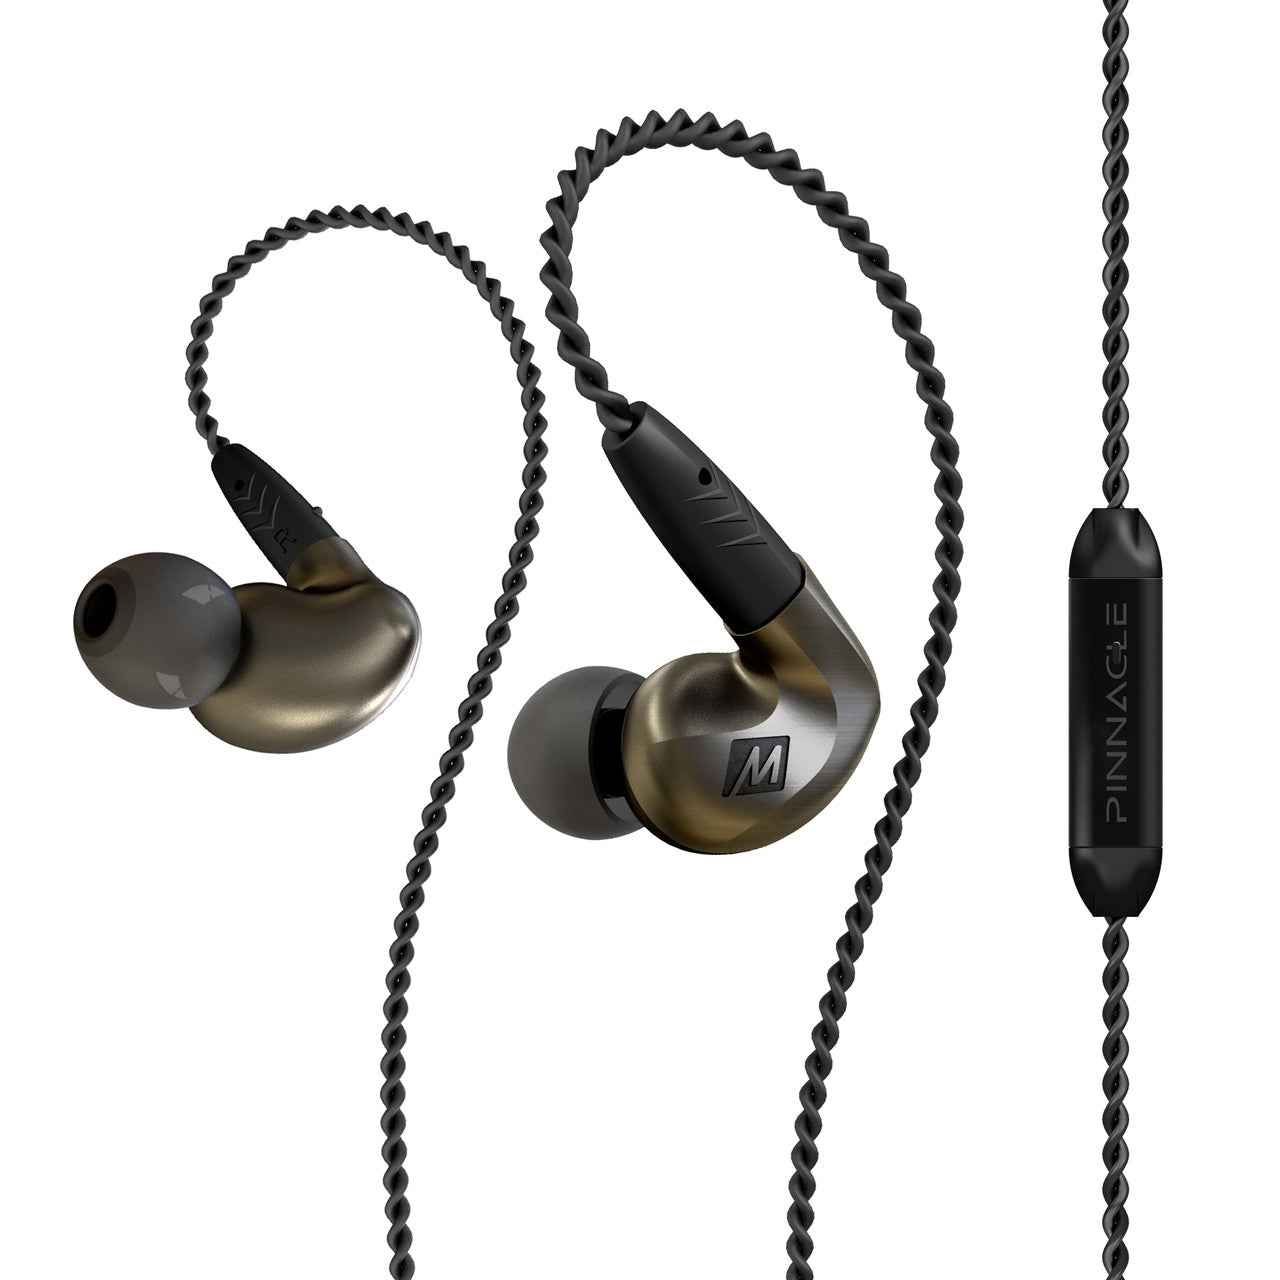 Image of Pinnacle P1 High Fidelity Audiophile In-Ear Headphones.